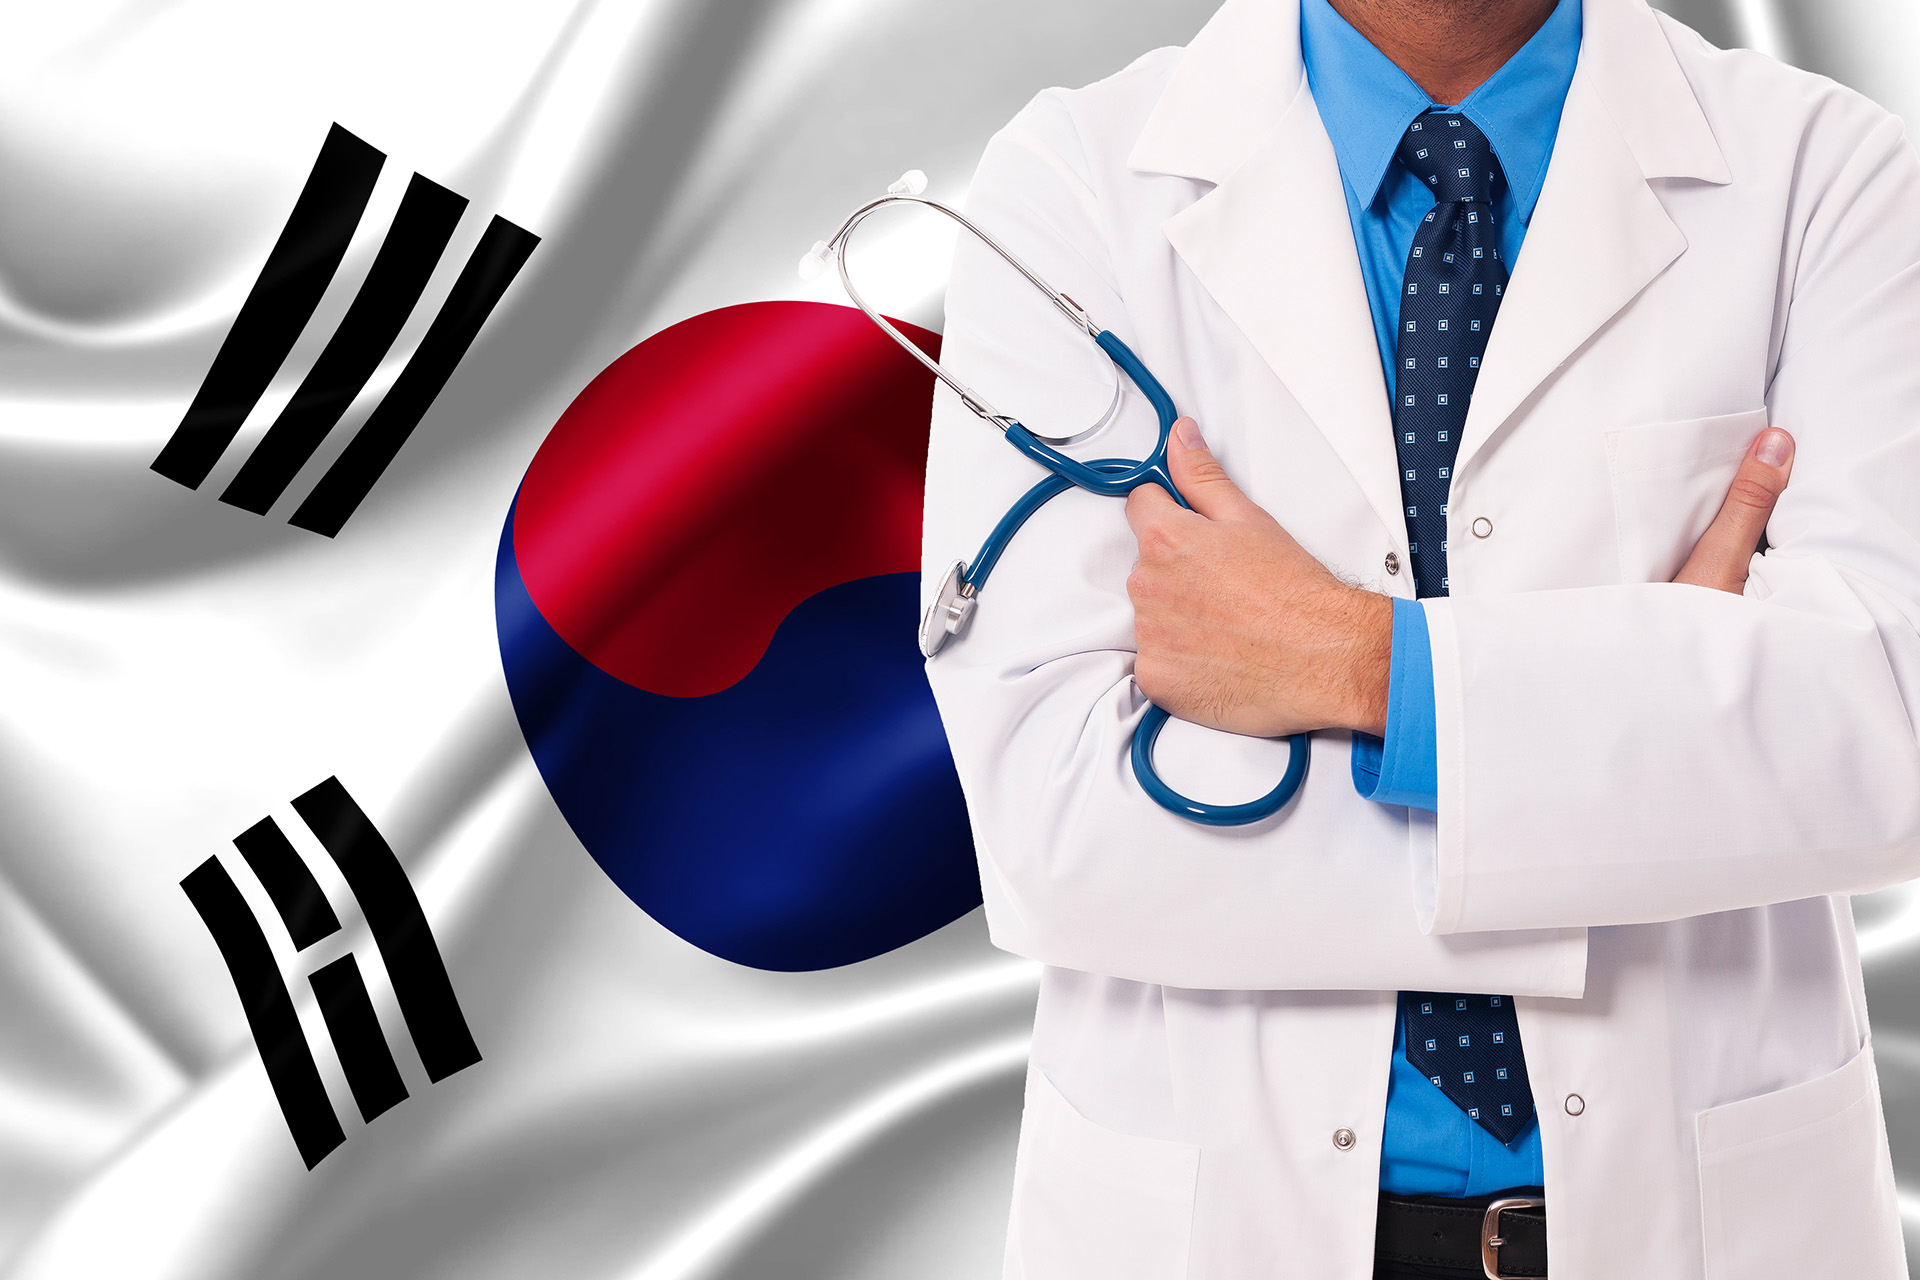 أطباء كبار في كوريا الجنوبية يقدمون استقالتهم دعما لإضراب المتدربين | أخبار صحة – البوكس نيوز